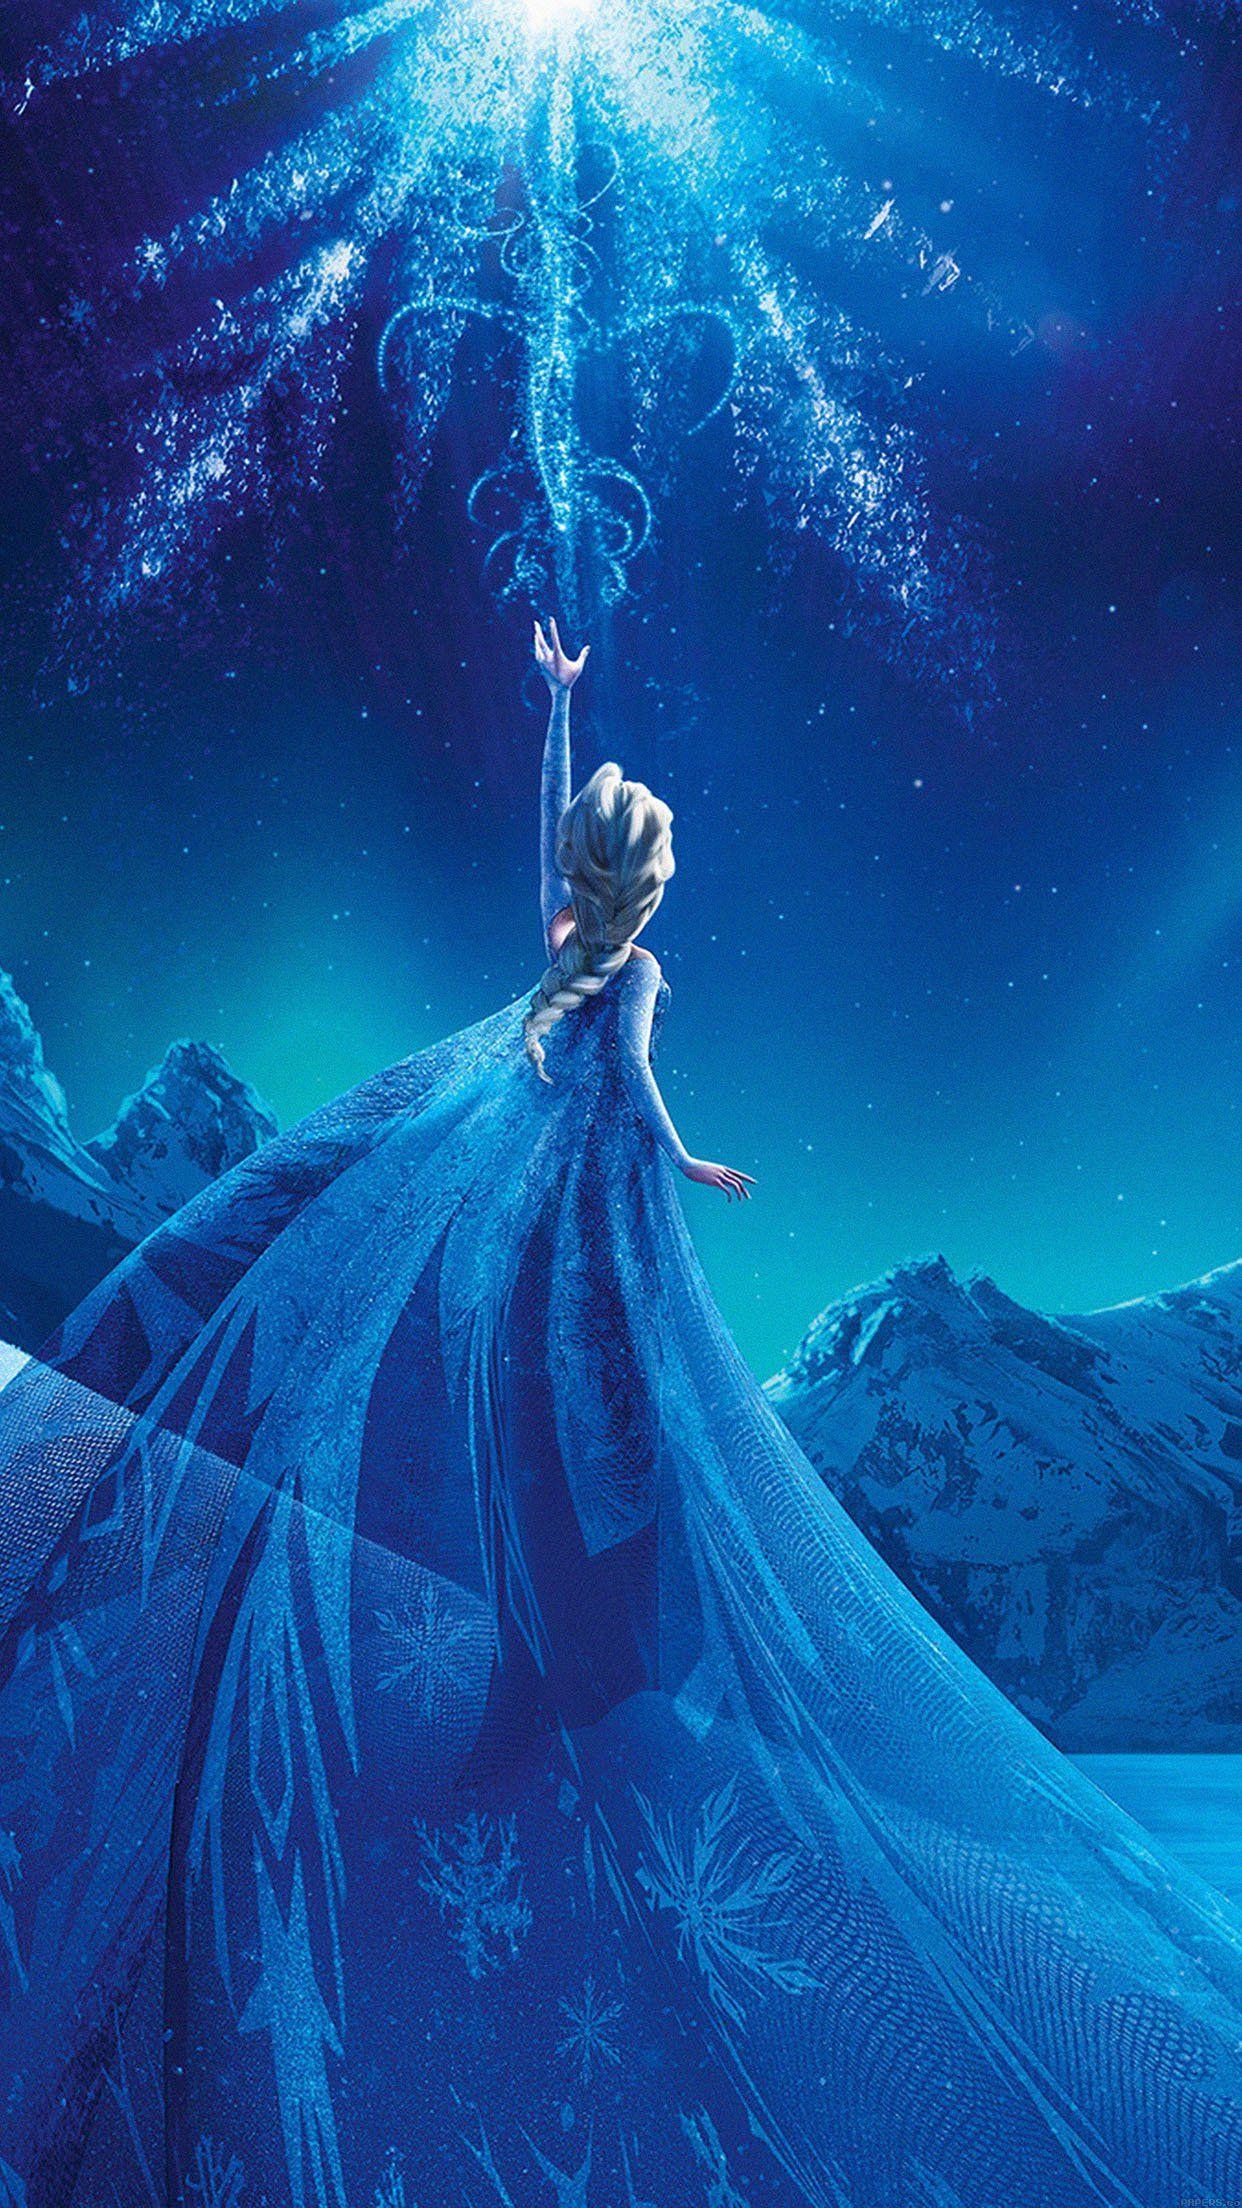 Những hình nền Elsa với chất lượng 4K đầy sắc màu chắc chắn sẽ khiến bạn phải trầm trồ khen ngợi. Dòng Elsa Hình nền của chúng tôi cập nhật liên tục để bạn luôn có thể tìm thấy hình nền phù hợp nhất cho màn hình của mình.